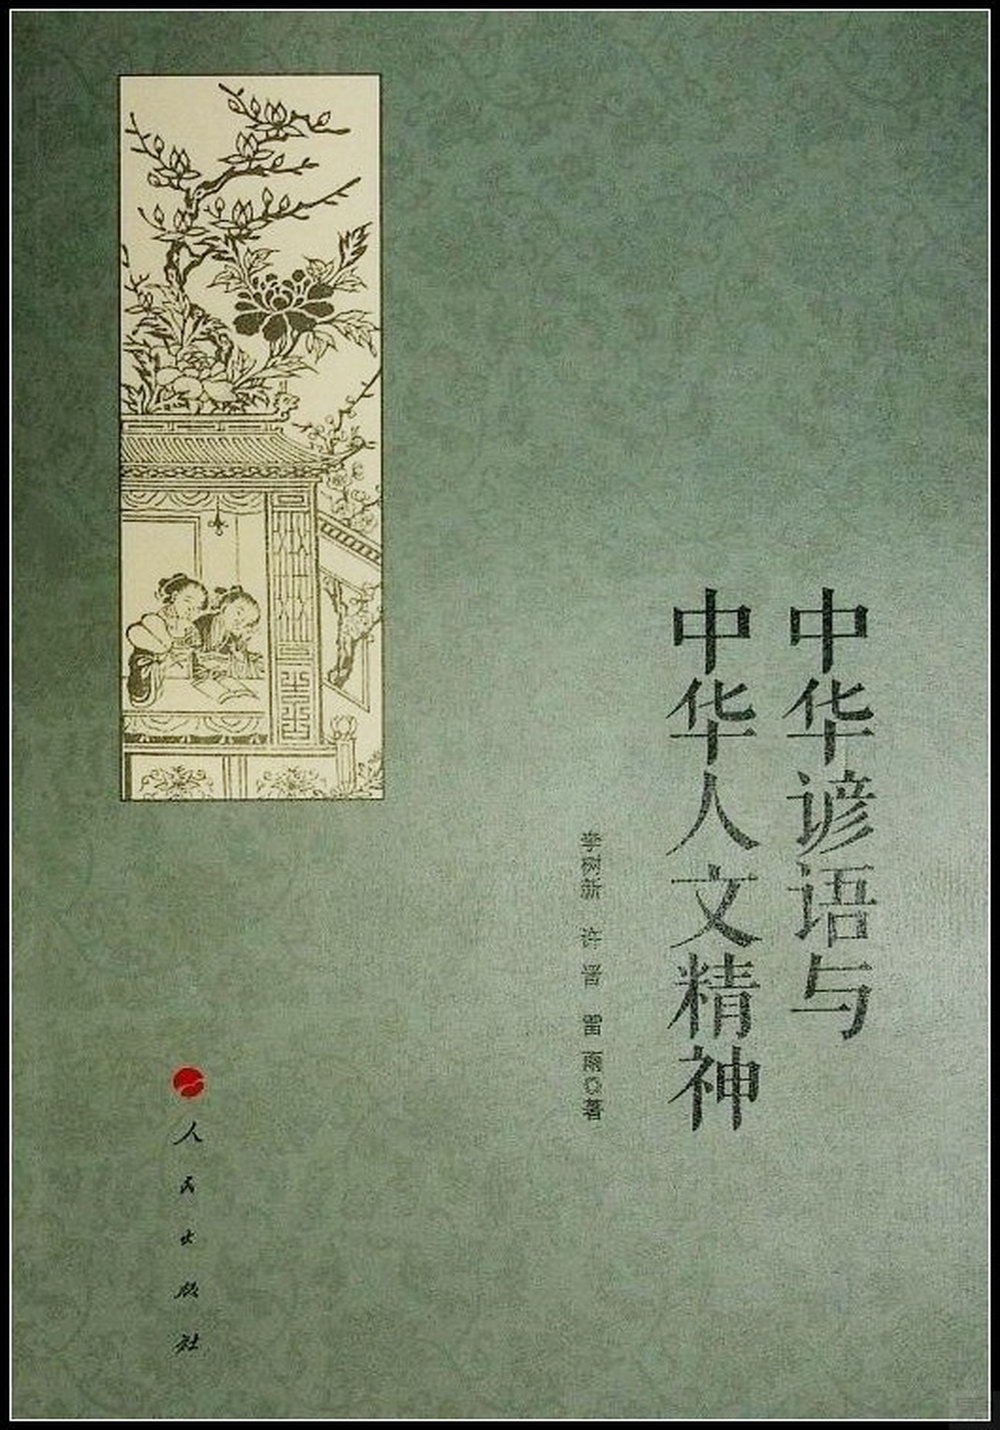 中華諺語與中華人文精神